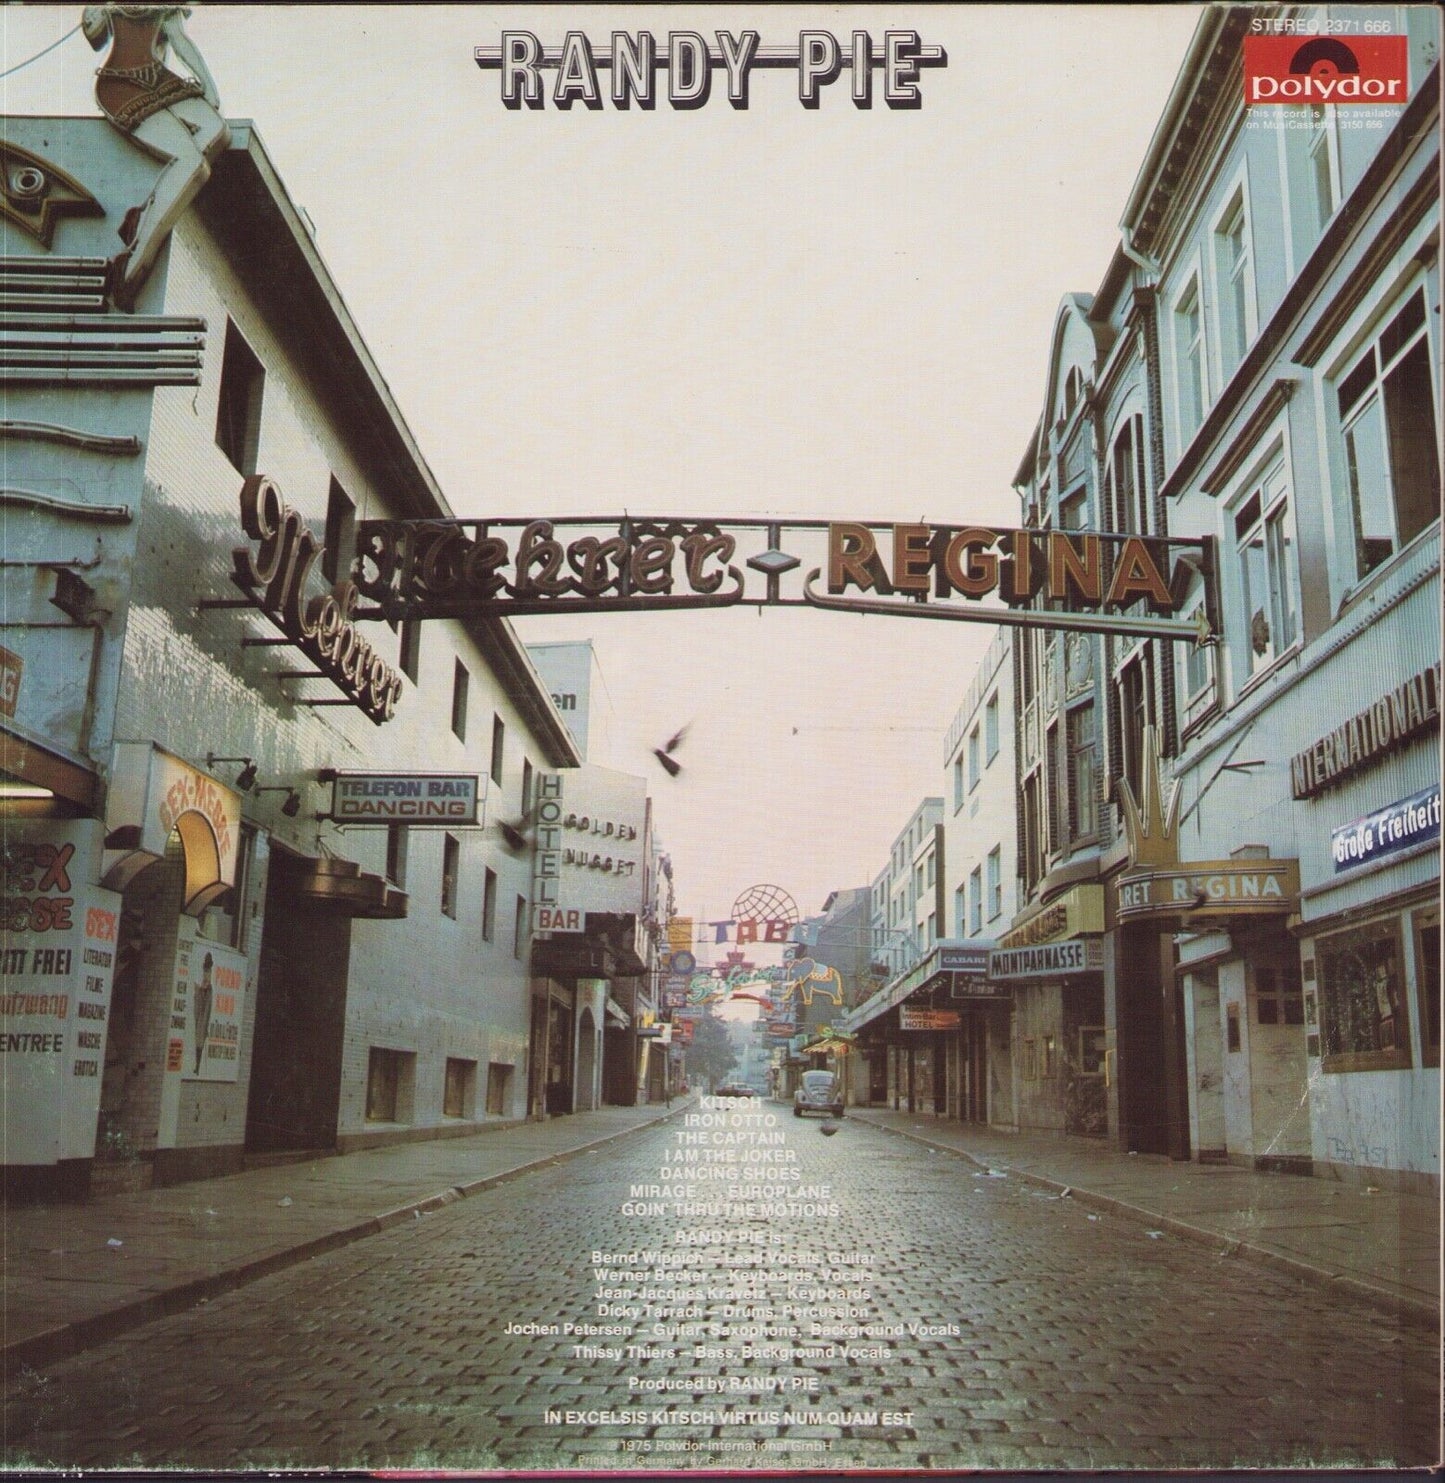 Randy Pie - Kitsch Vinyl LP